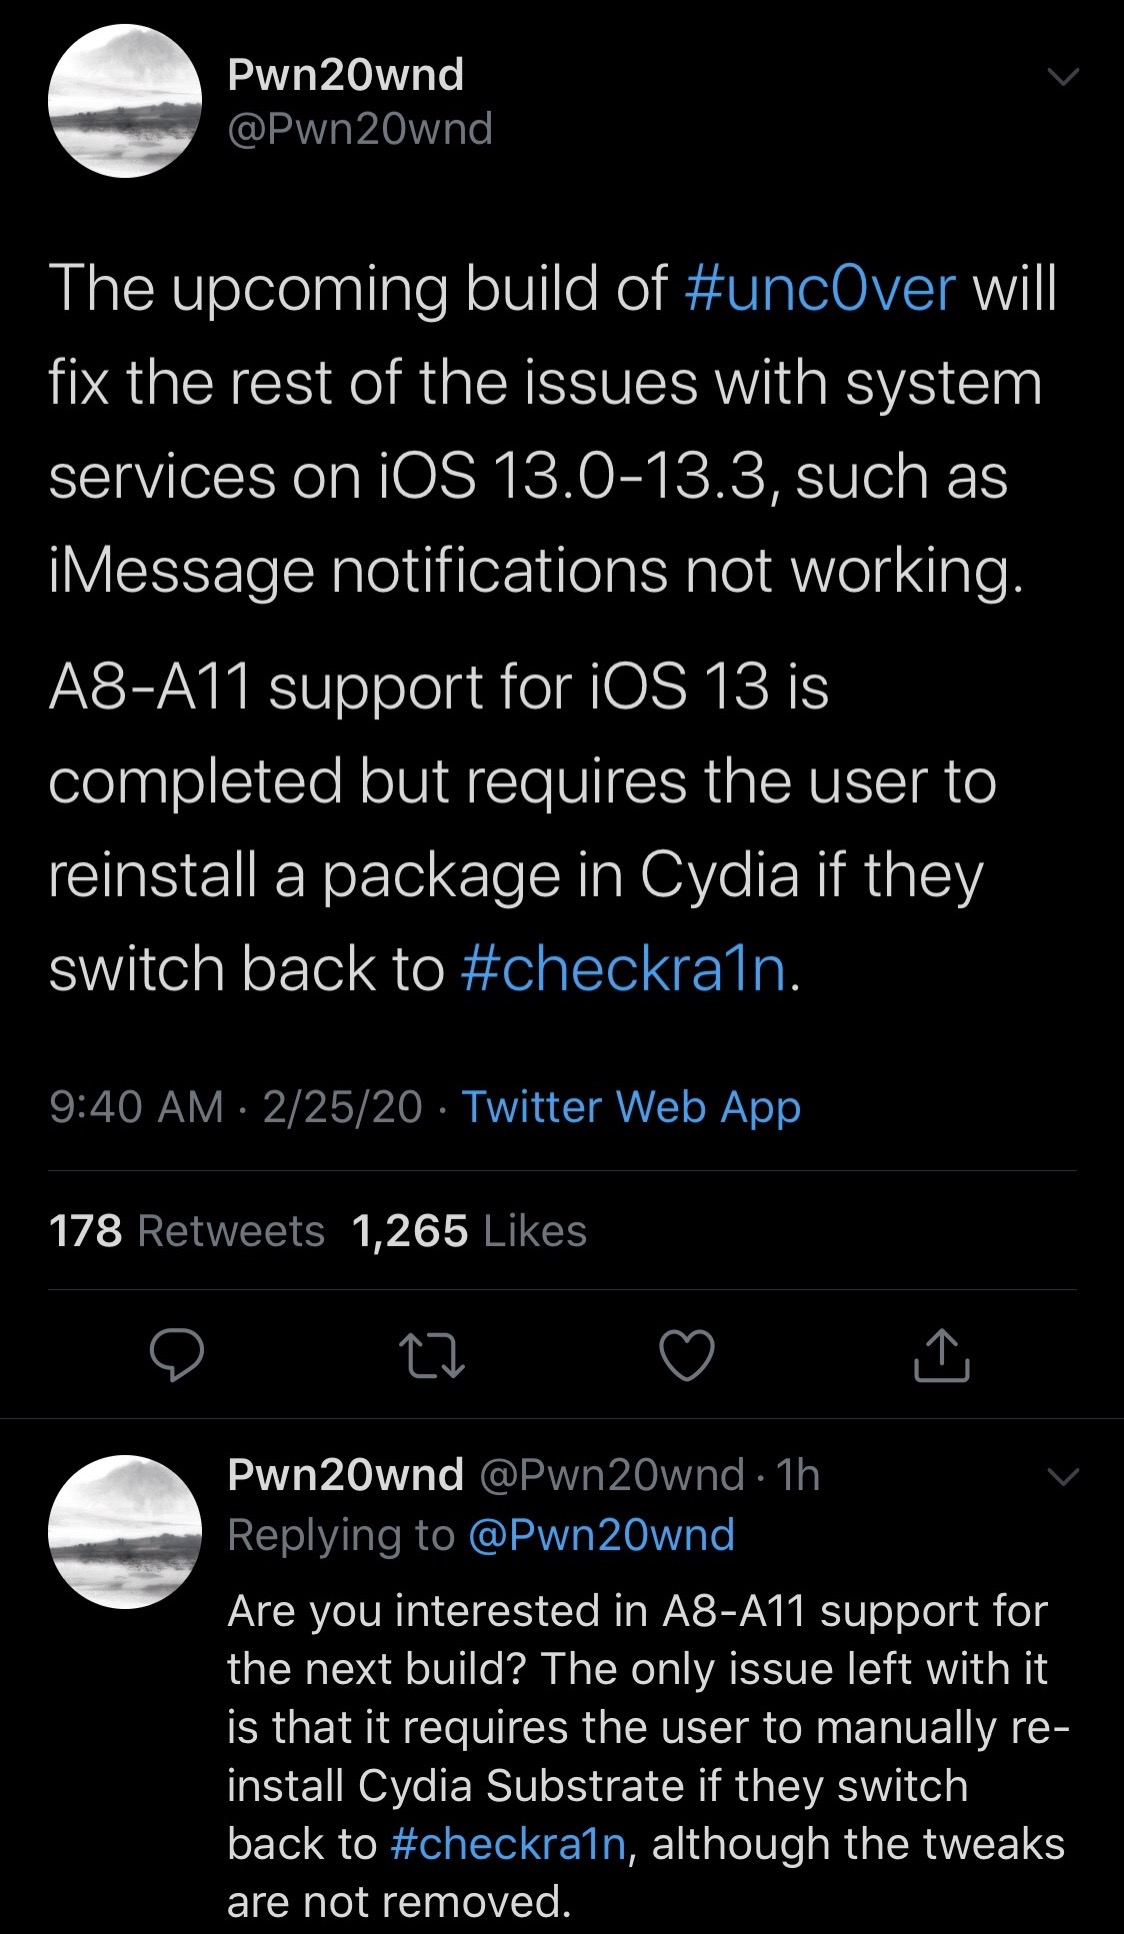 Pembaruan berikutnya yang ditemukan untuk mendukung iOS 13.0-13.3 pada perangkat A8-A11 3